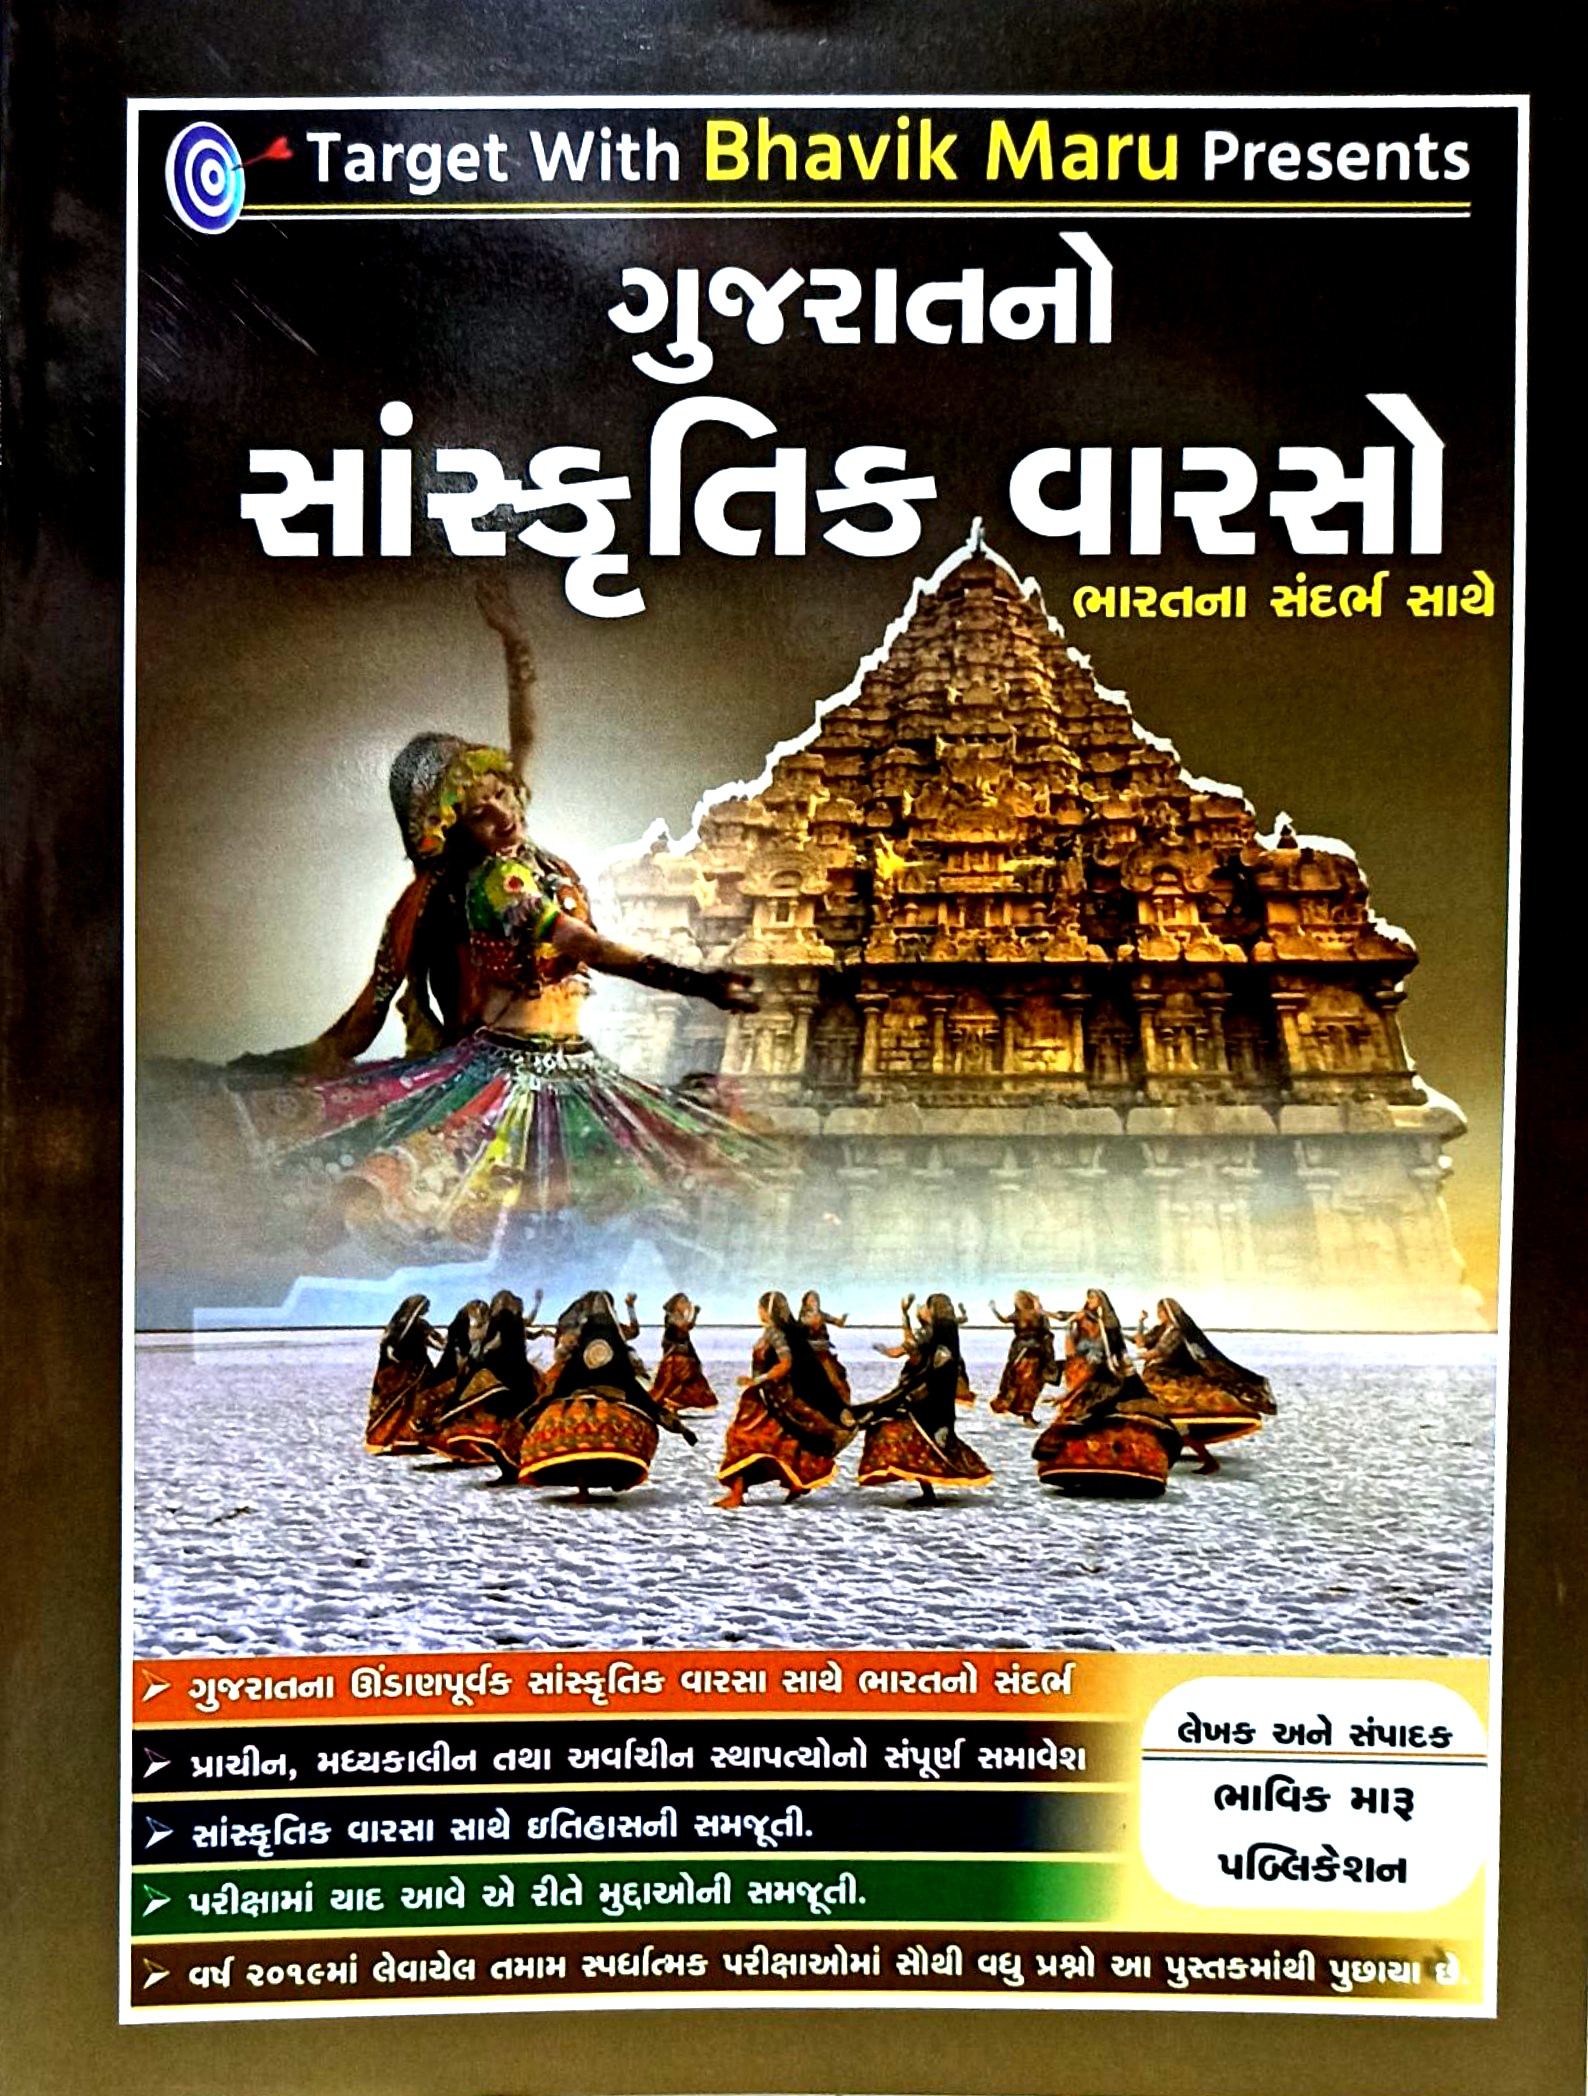 Gujarat No Sanskrutik Varso